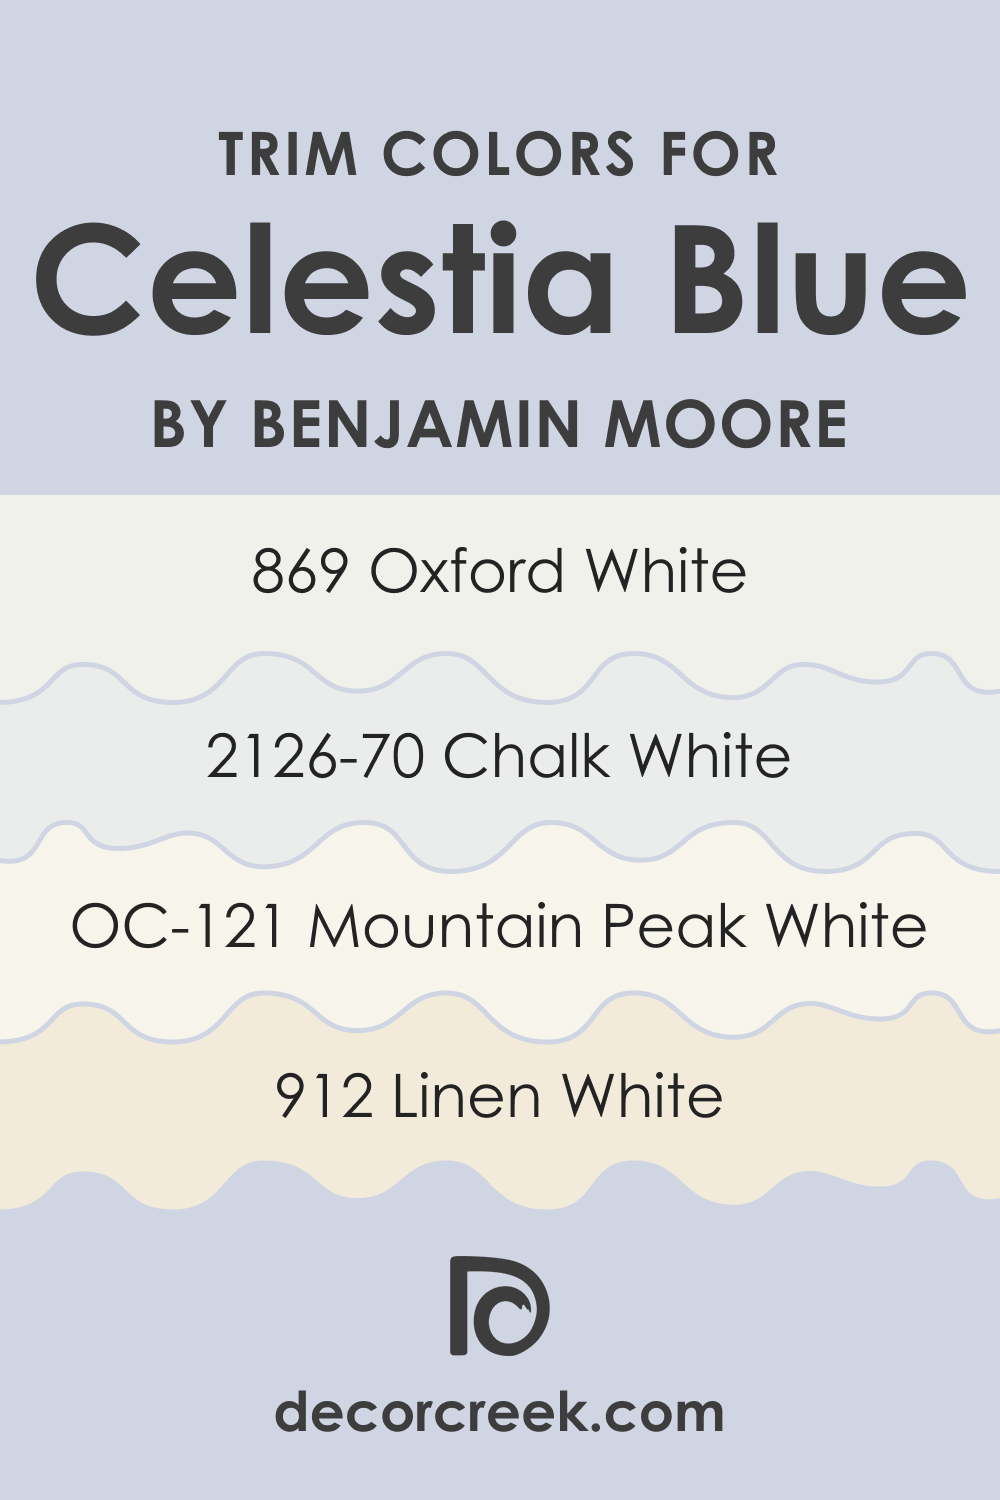 Trim Colors of Celestia Blue 1429